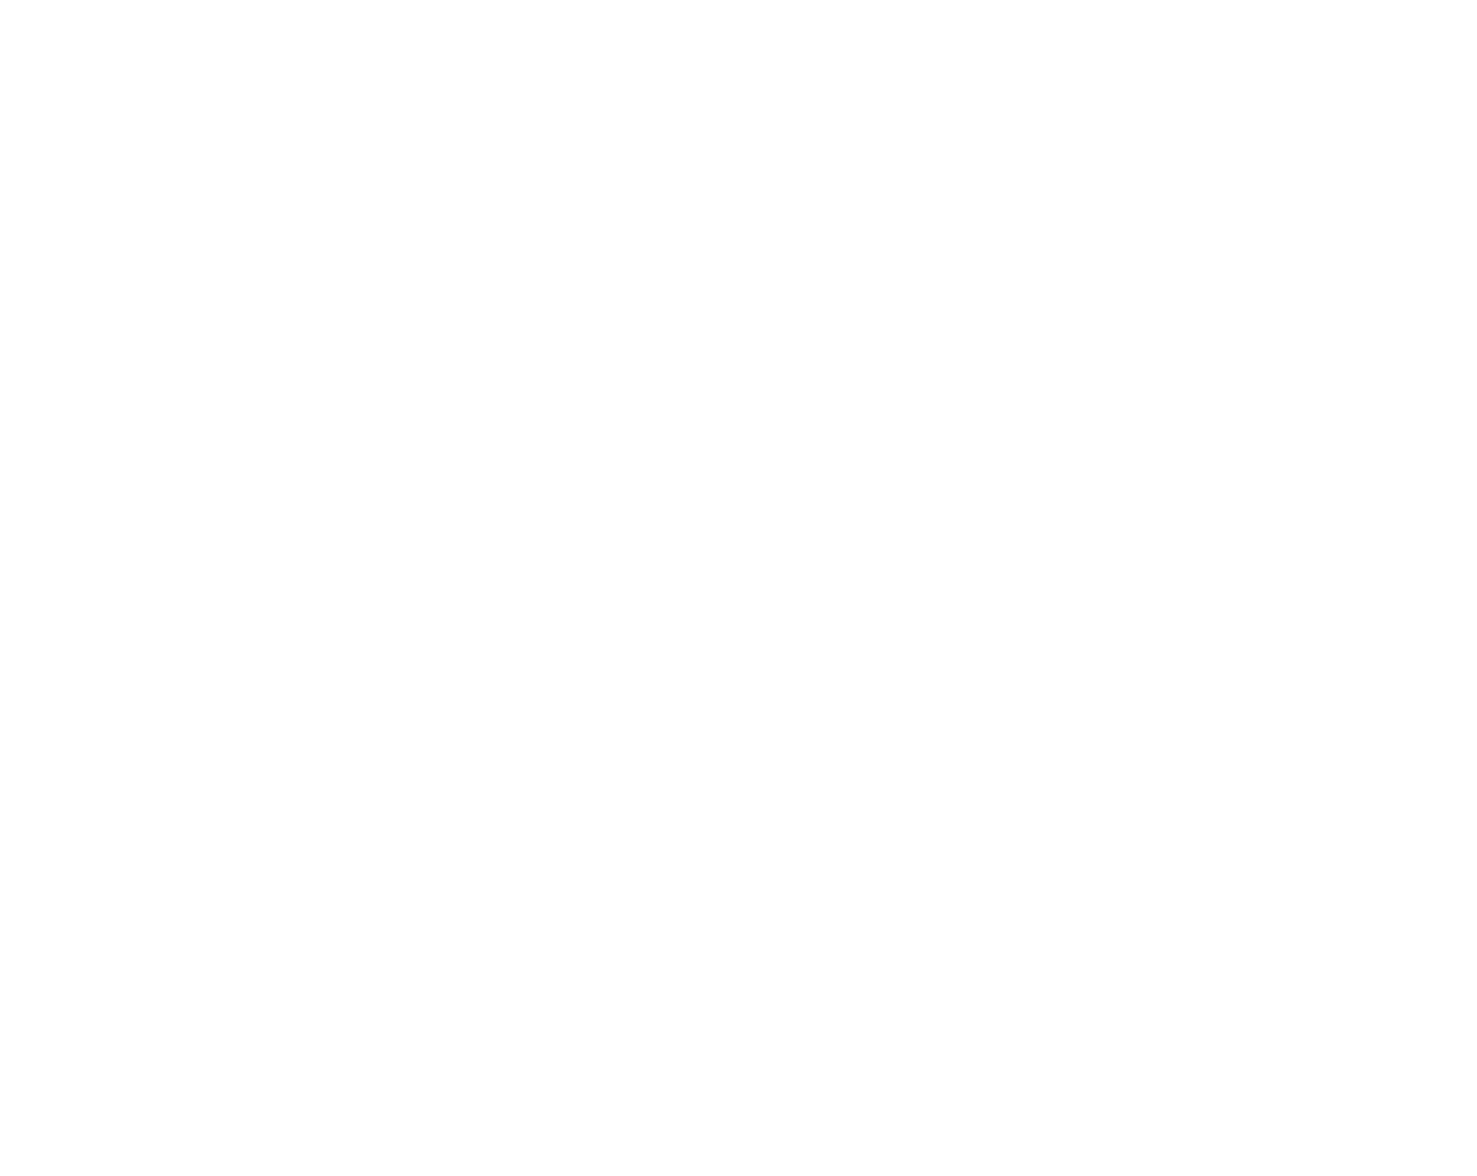 US Global Jets ETF logo for dark backgrounds (transparent PNG)